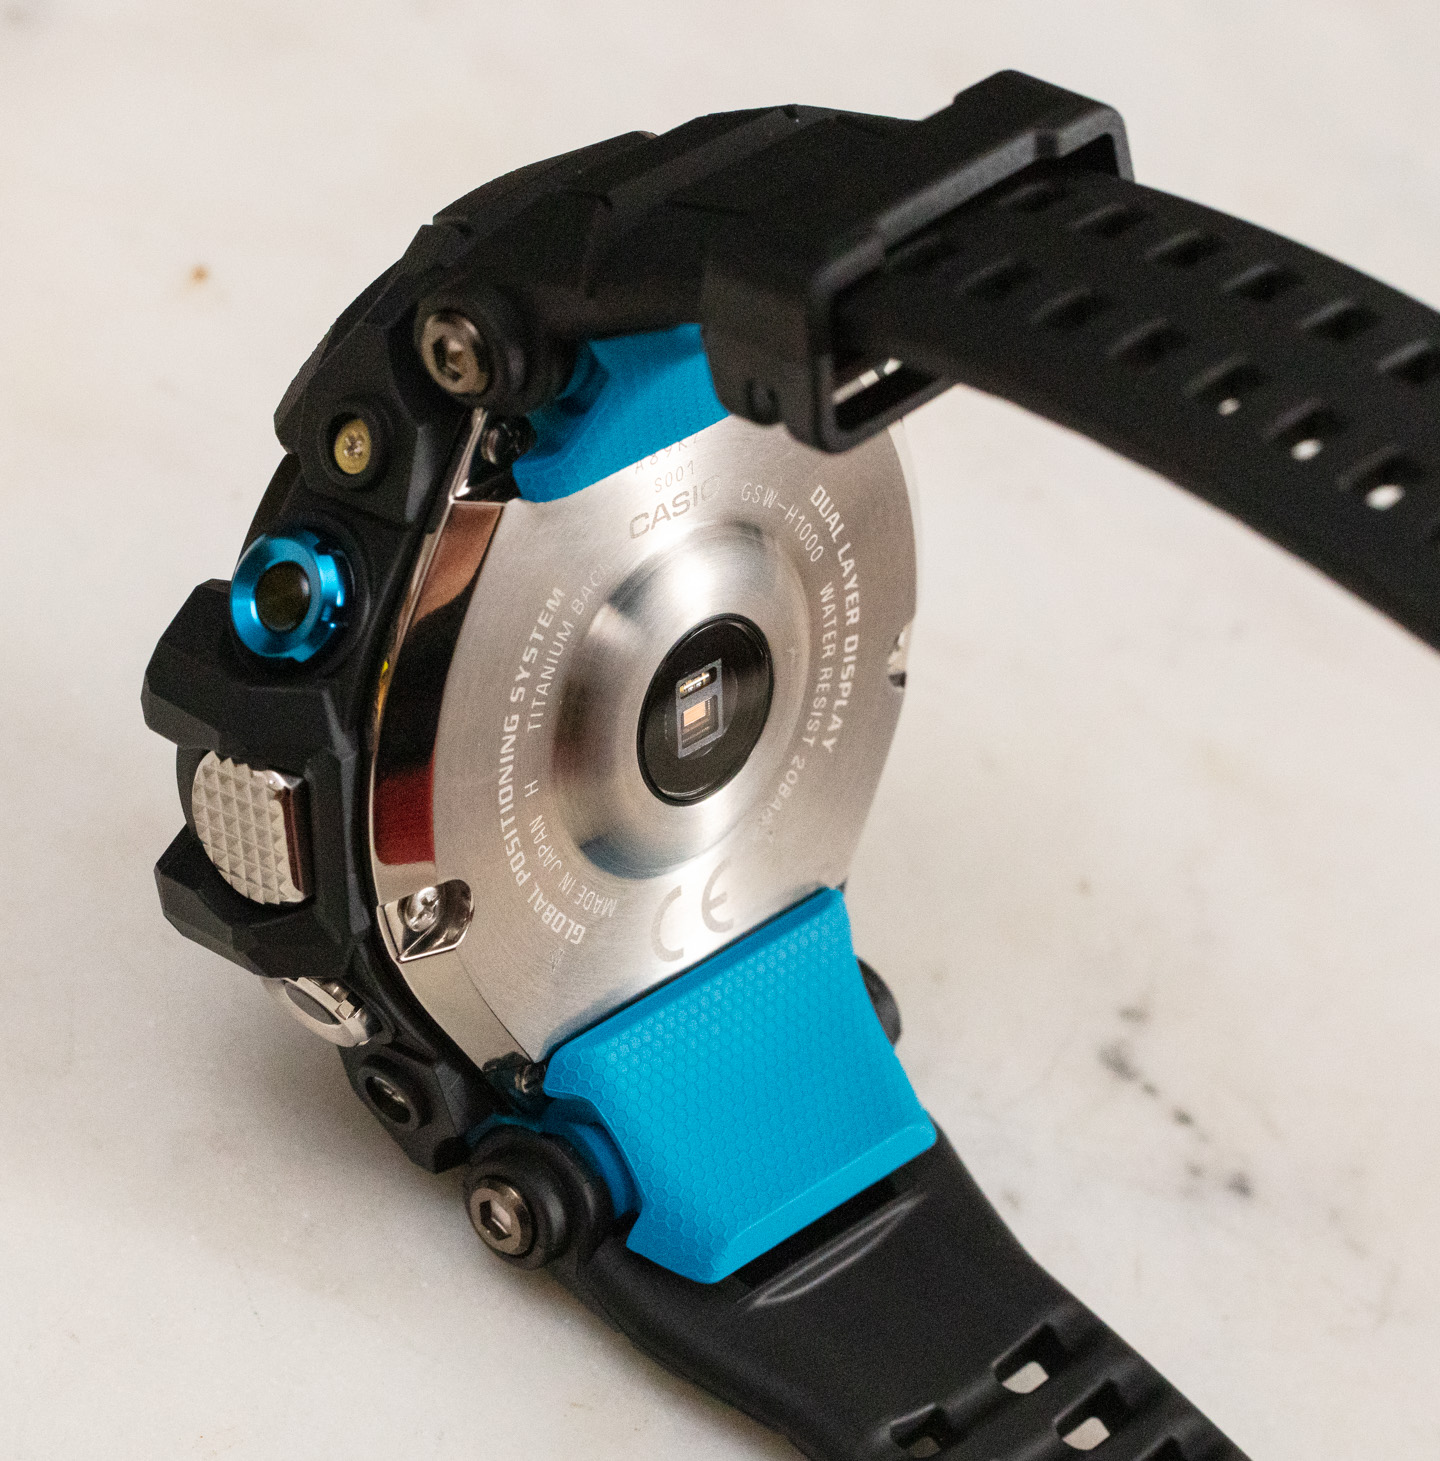 Shock watch g smart Casio unveils